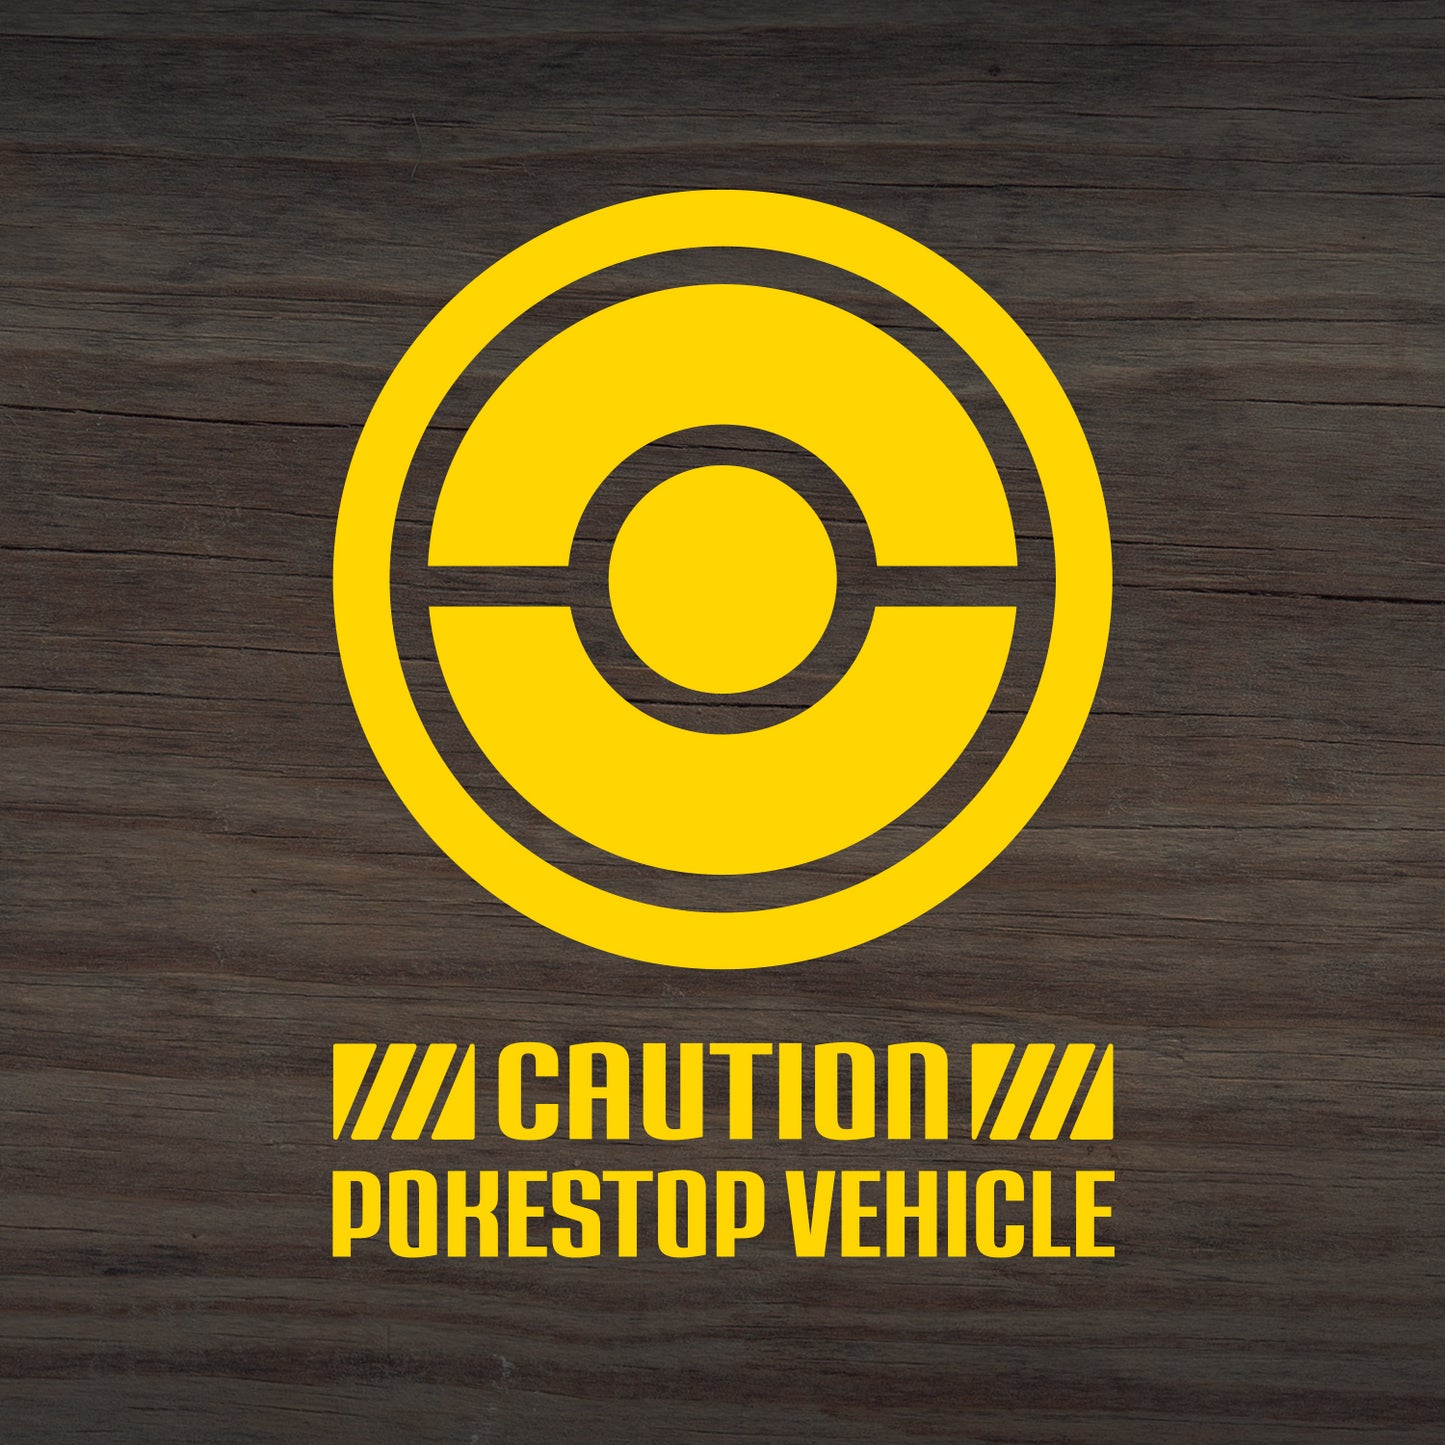 Pogo Caution PokeStop Vehicle Decal